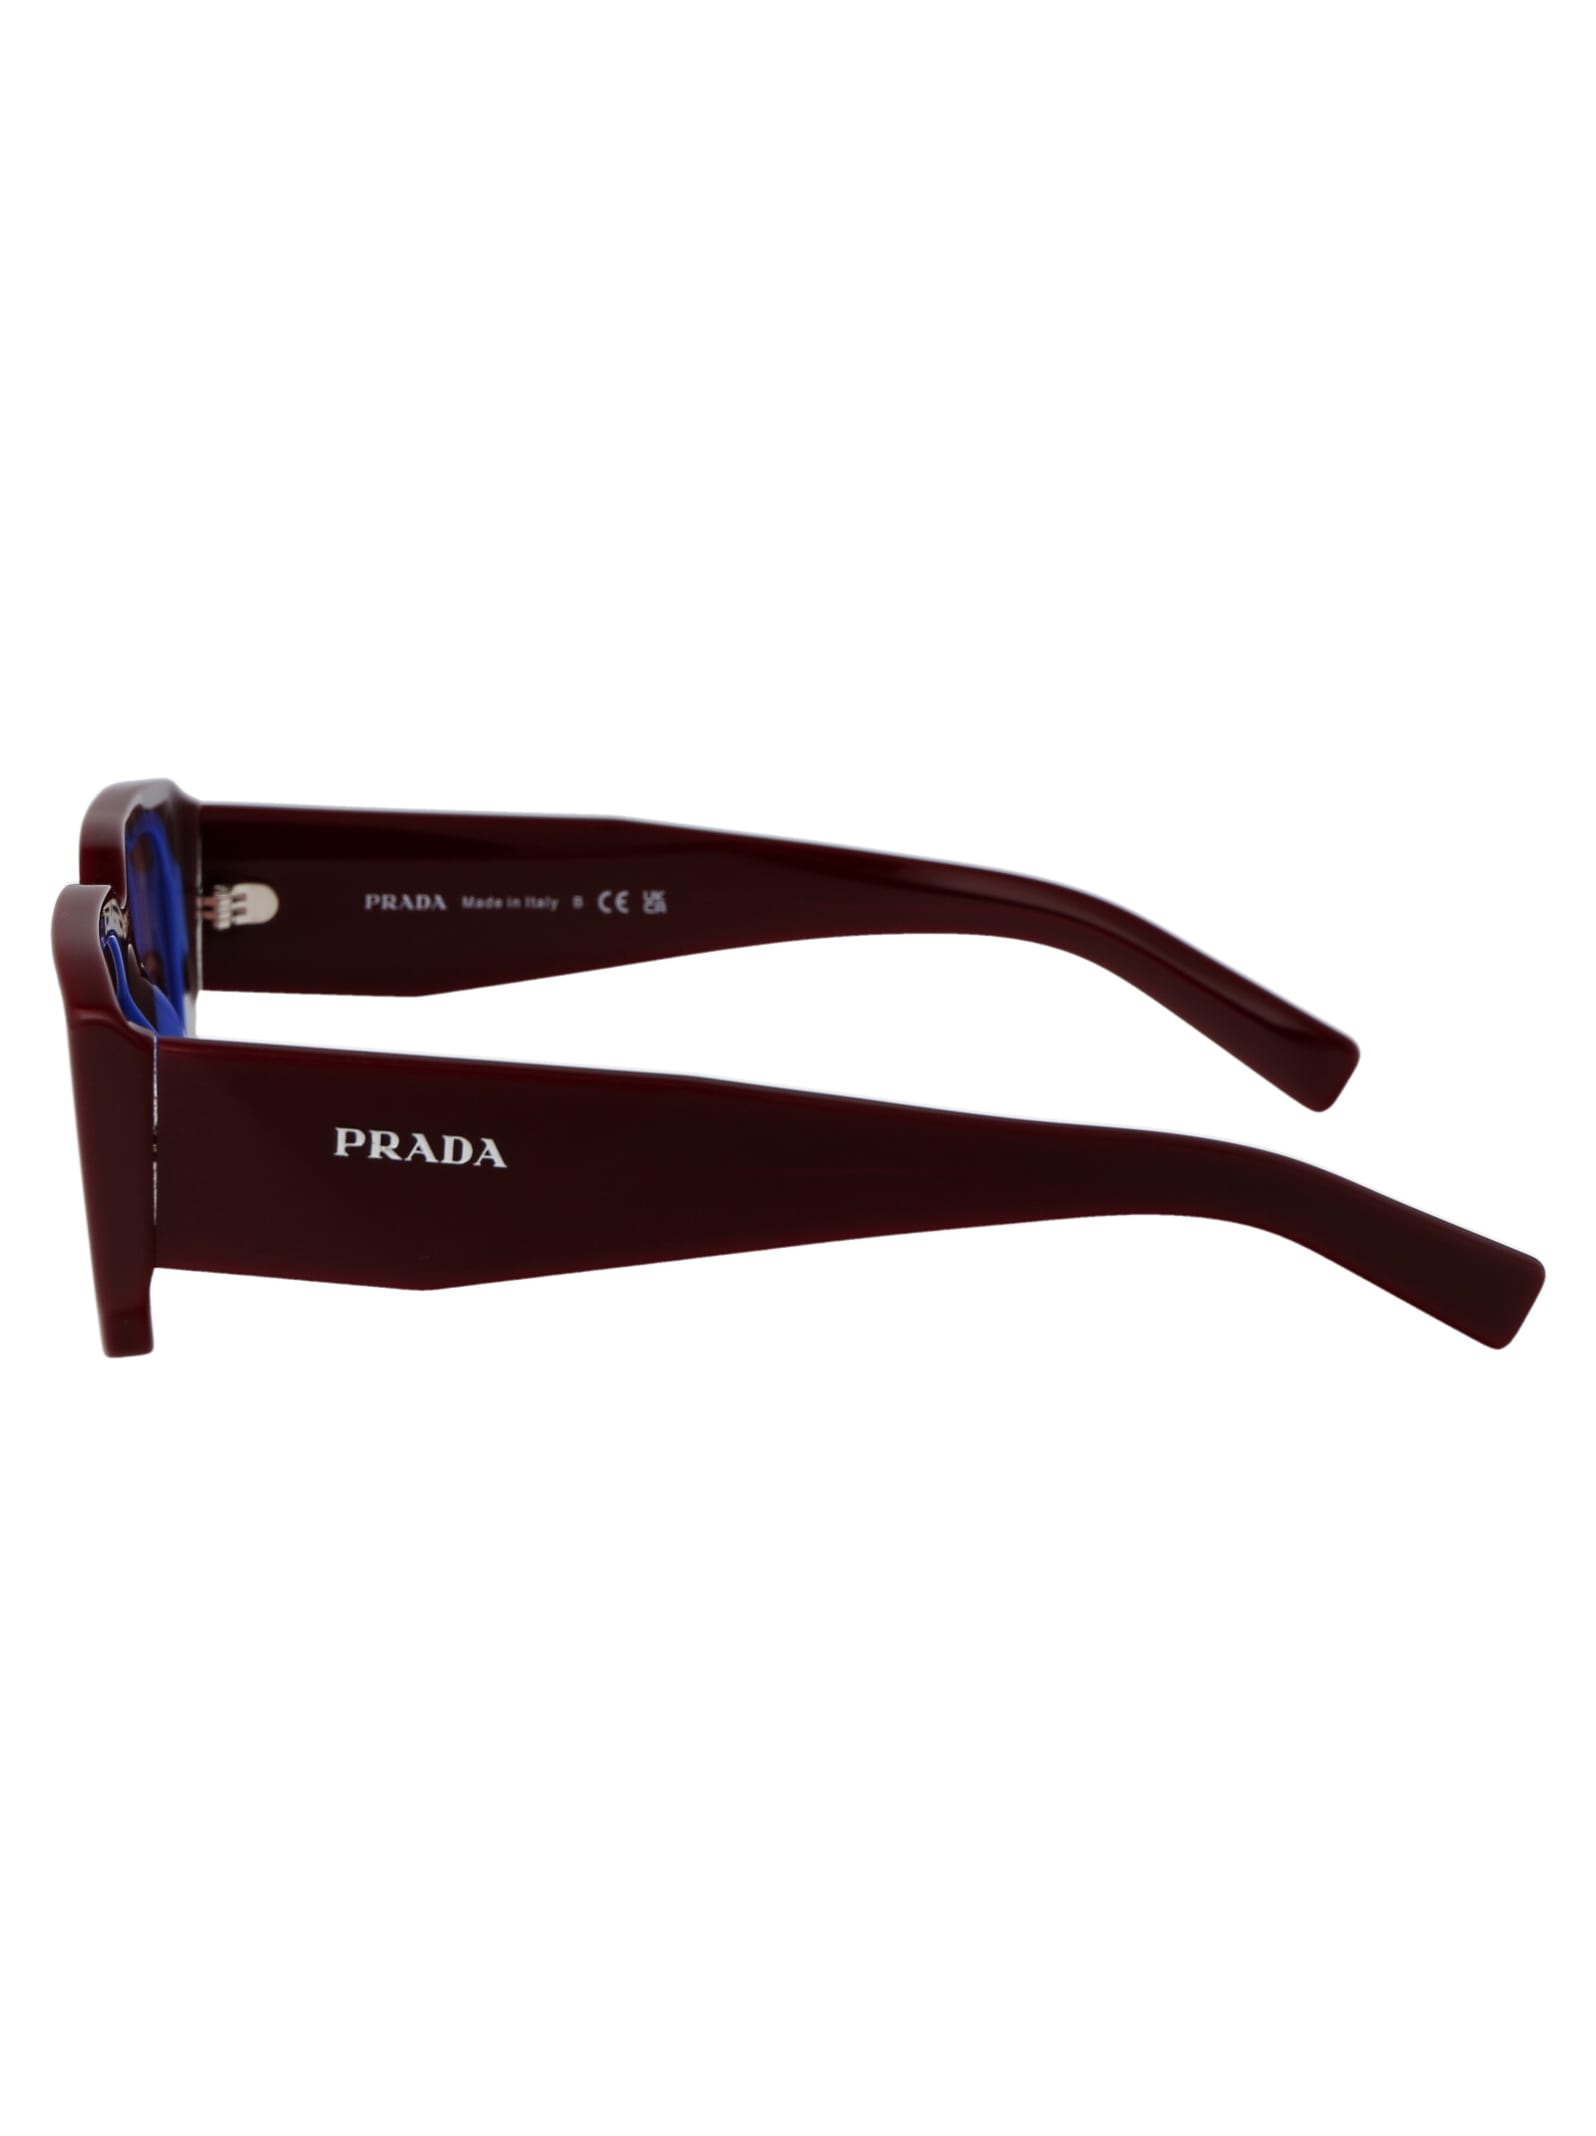 Shop Prada 0pr 06ys Sunglasses In 16m08s Etruscan/blue